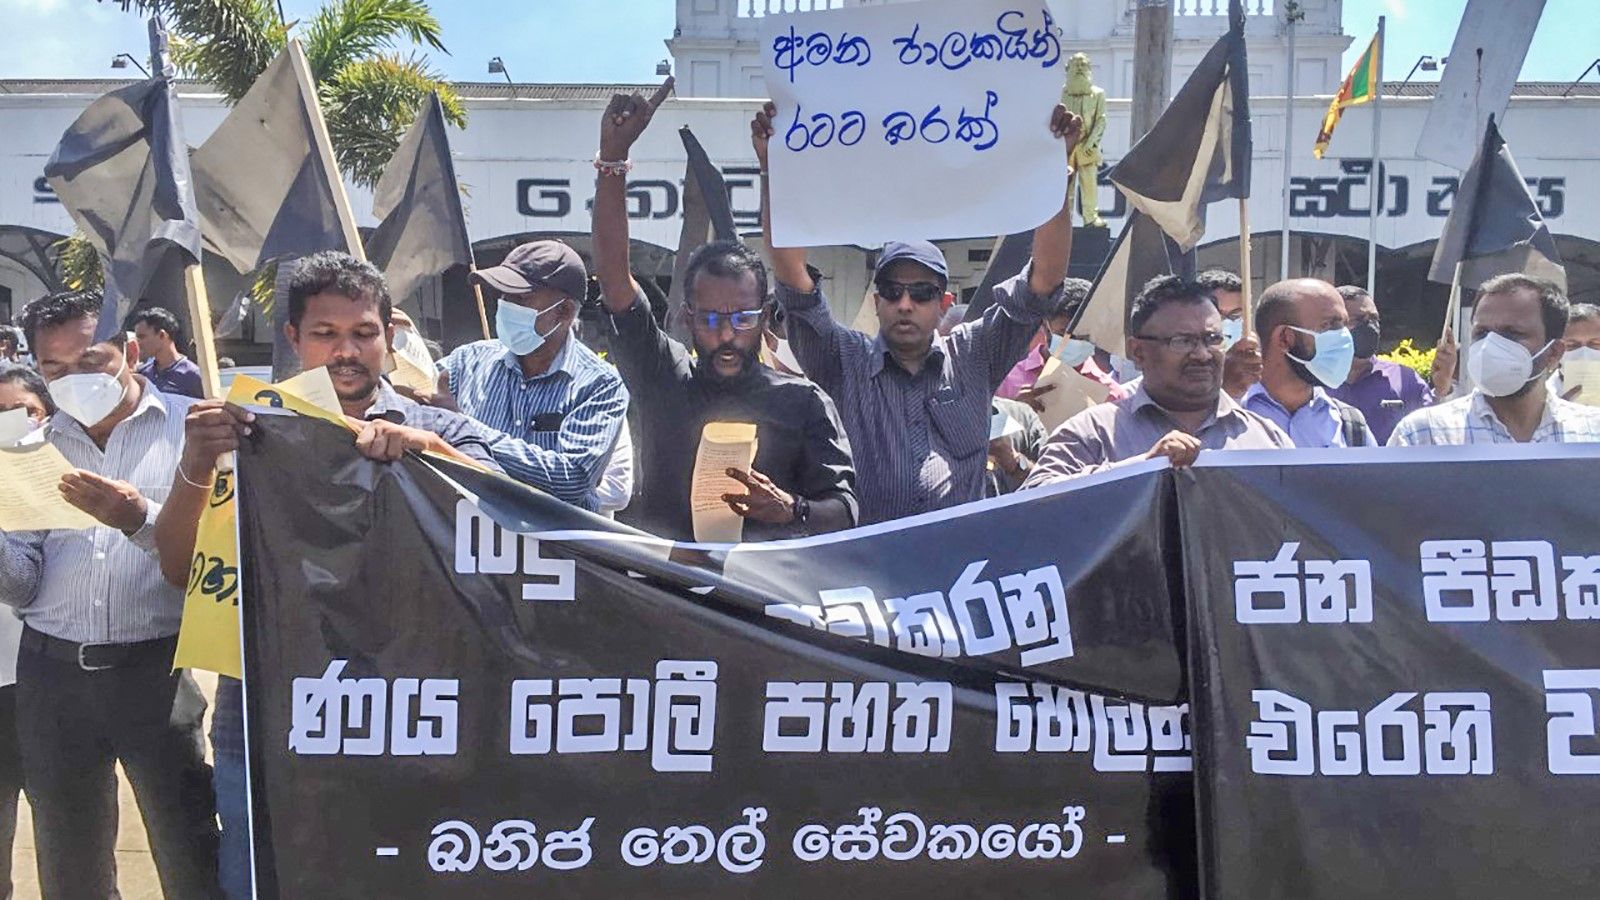 Die srilankische Regierung setzt Militär und Polizei gegen den Streik der Erdölarbeiter ein